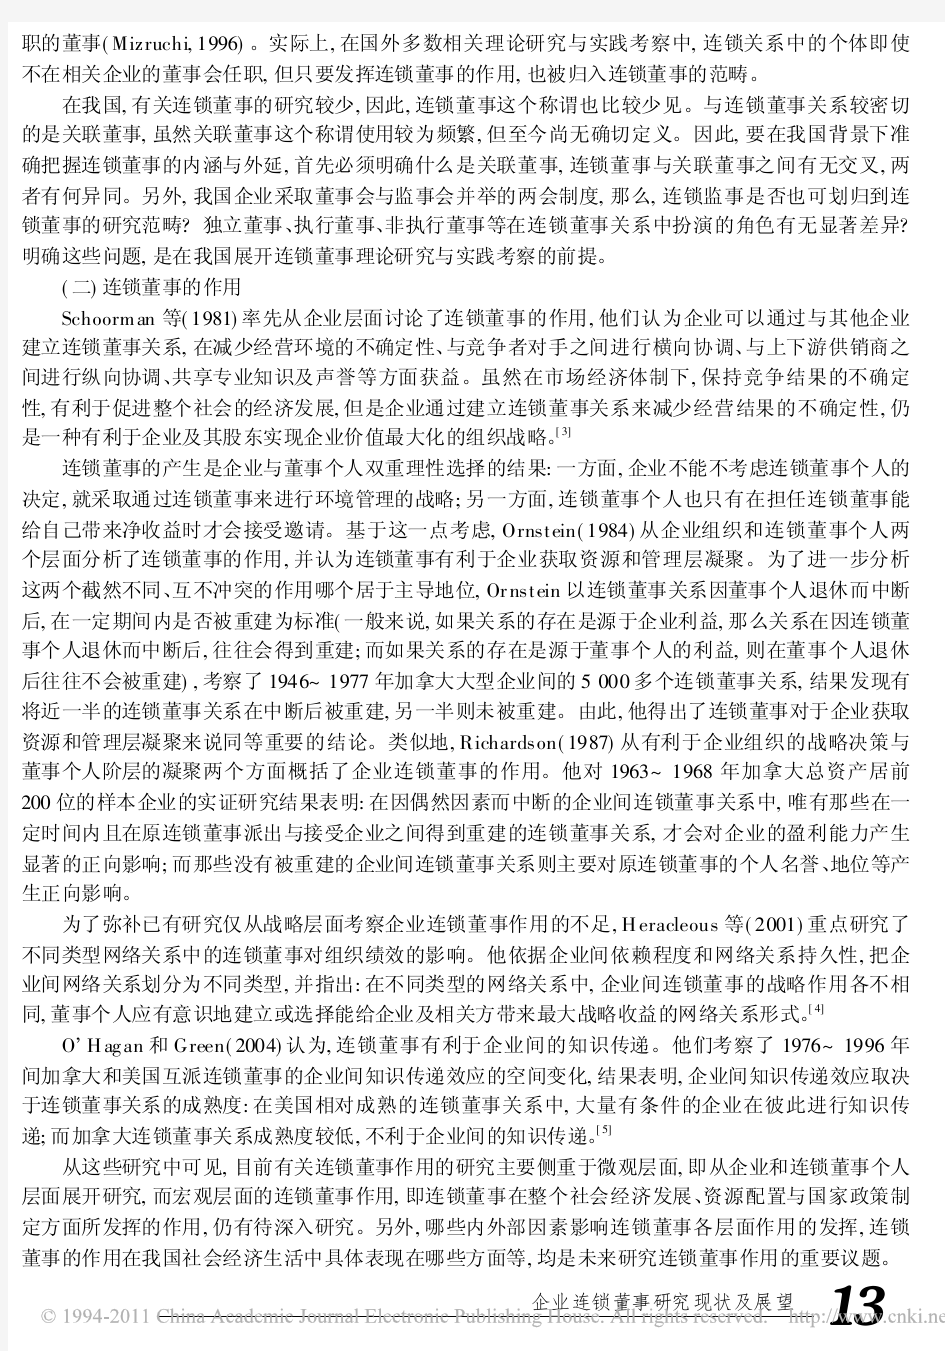 段海燕仲伟周(2008)连锁董事研究现状及展望